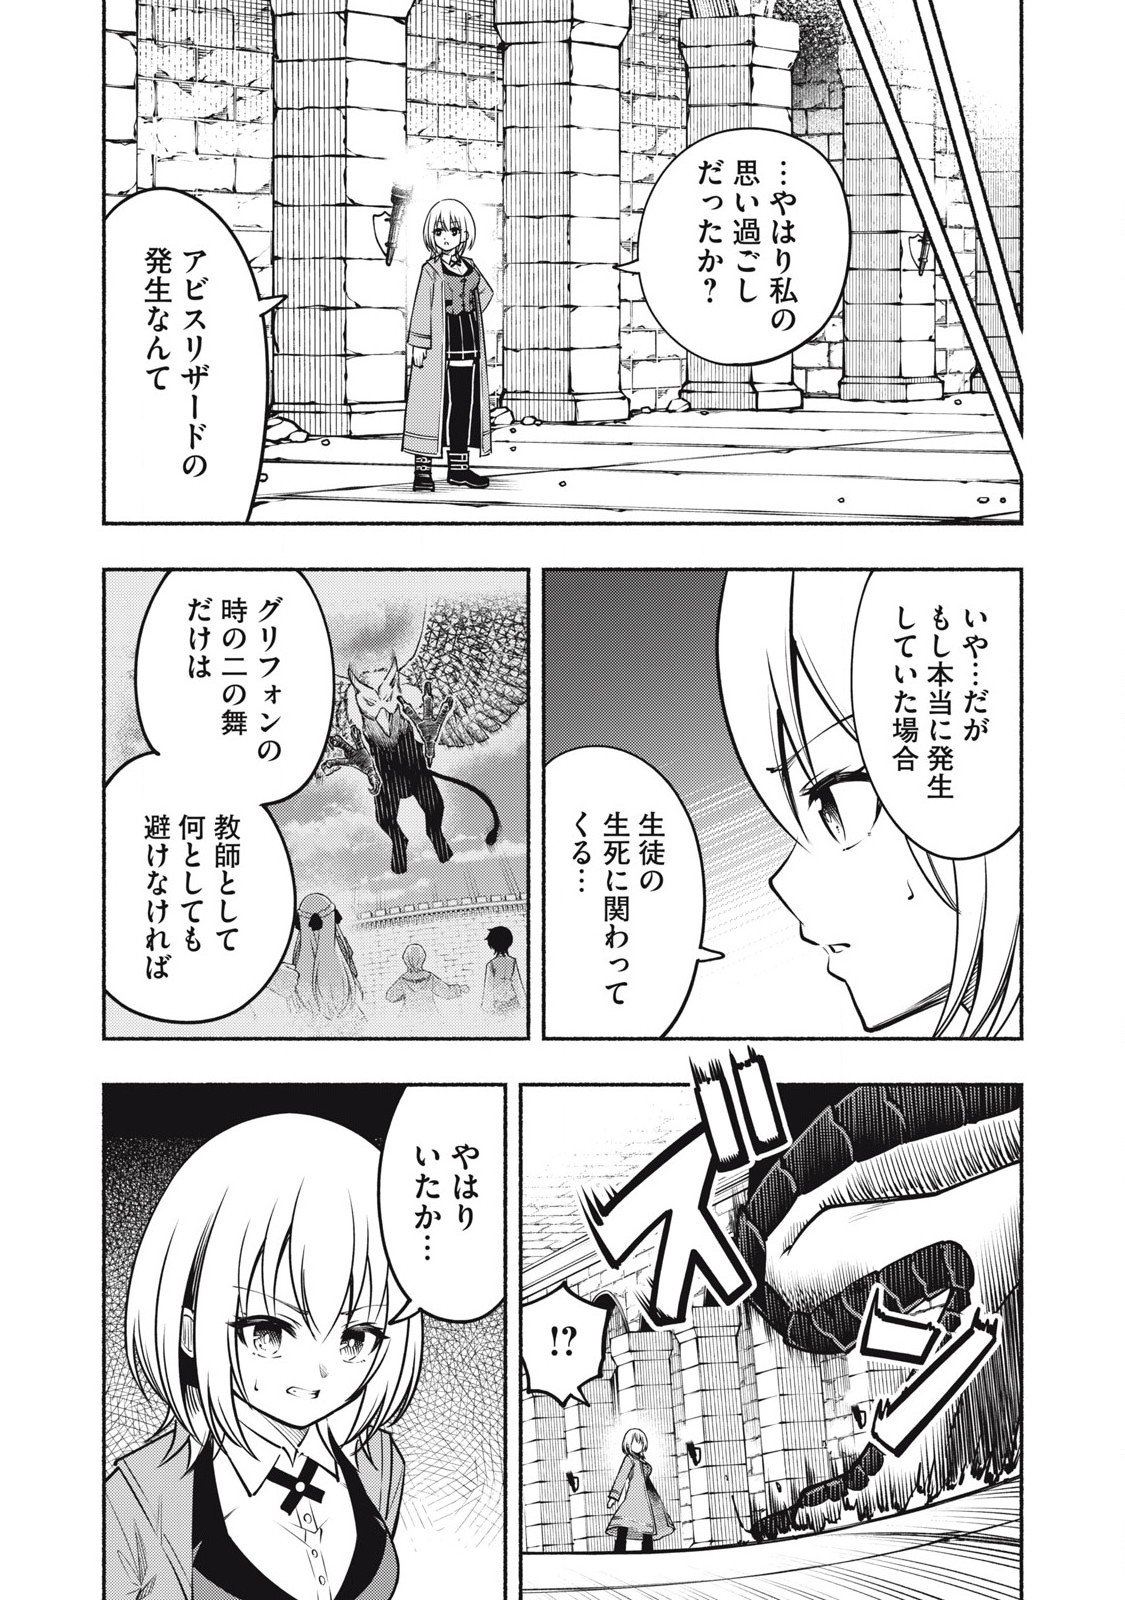 Yama ni Suterareta Ore, Tokage no Youshi ni Naru - Chapter 8.2 - Page 1